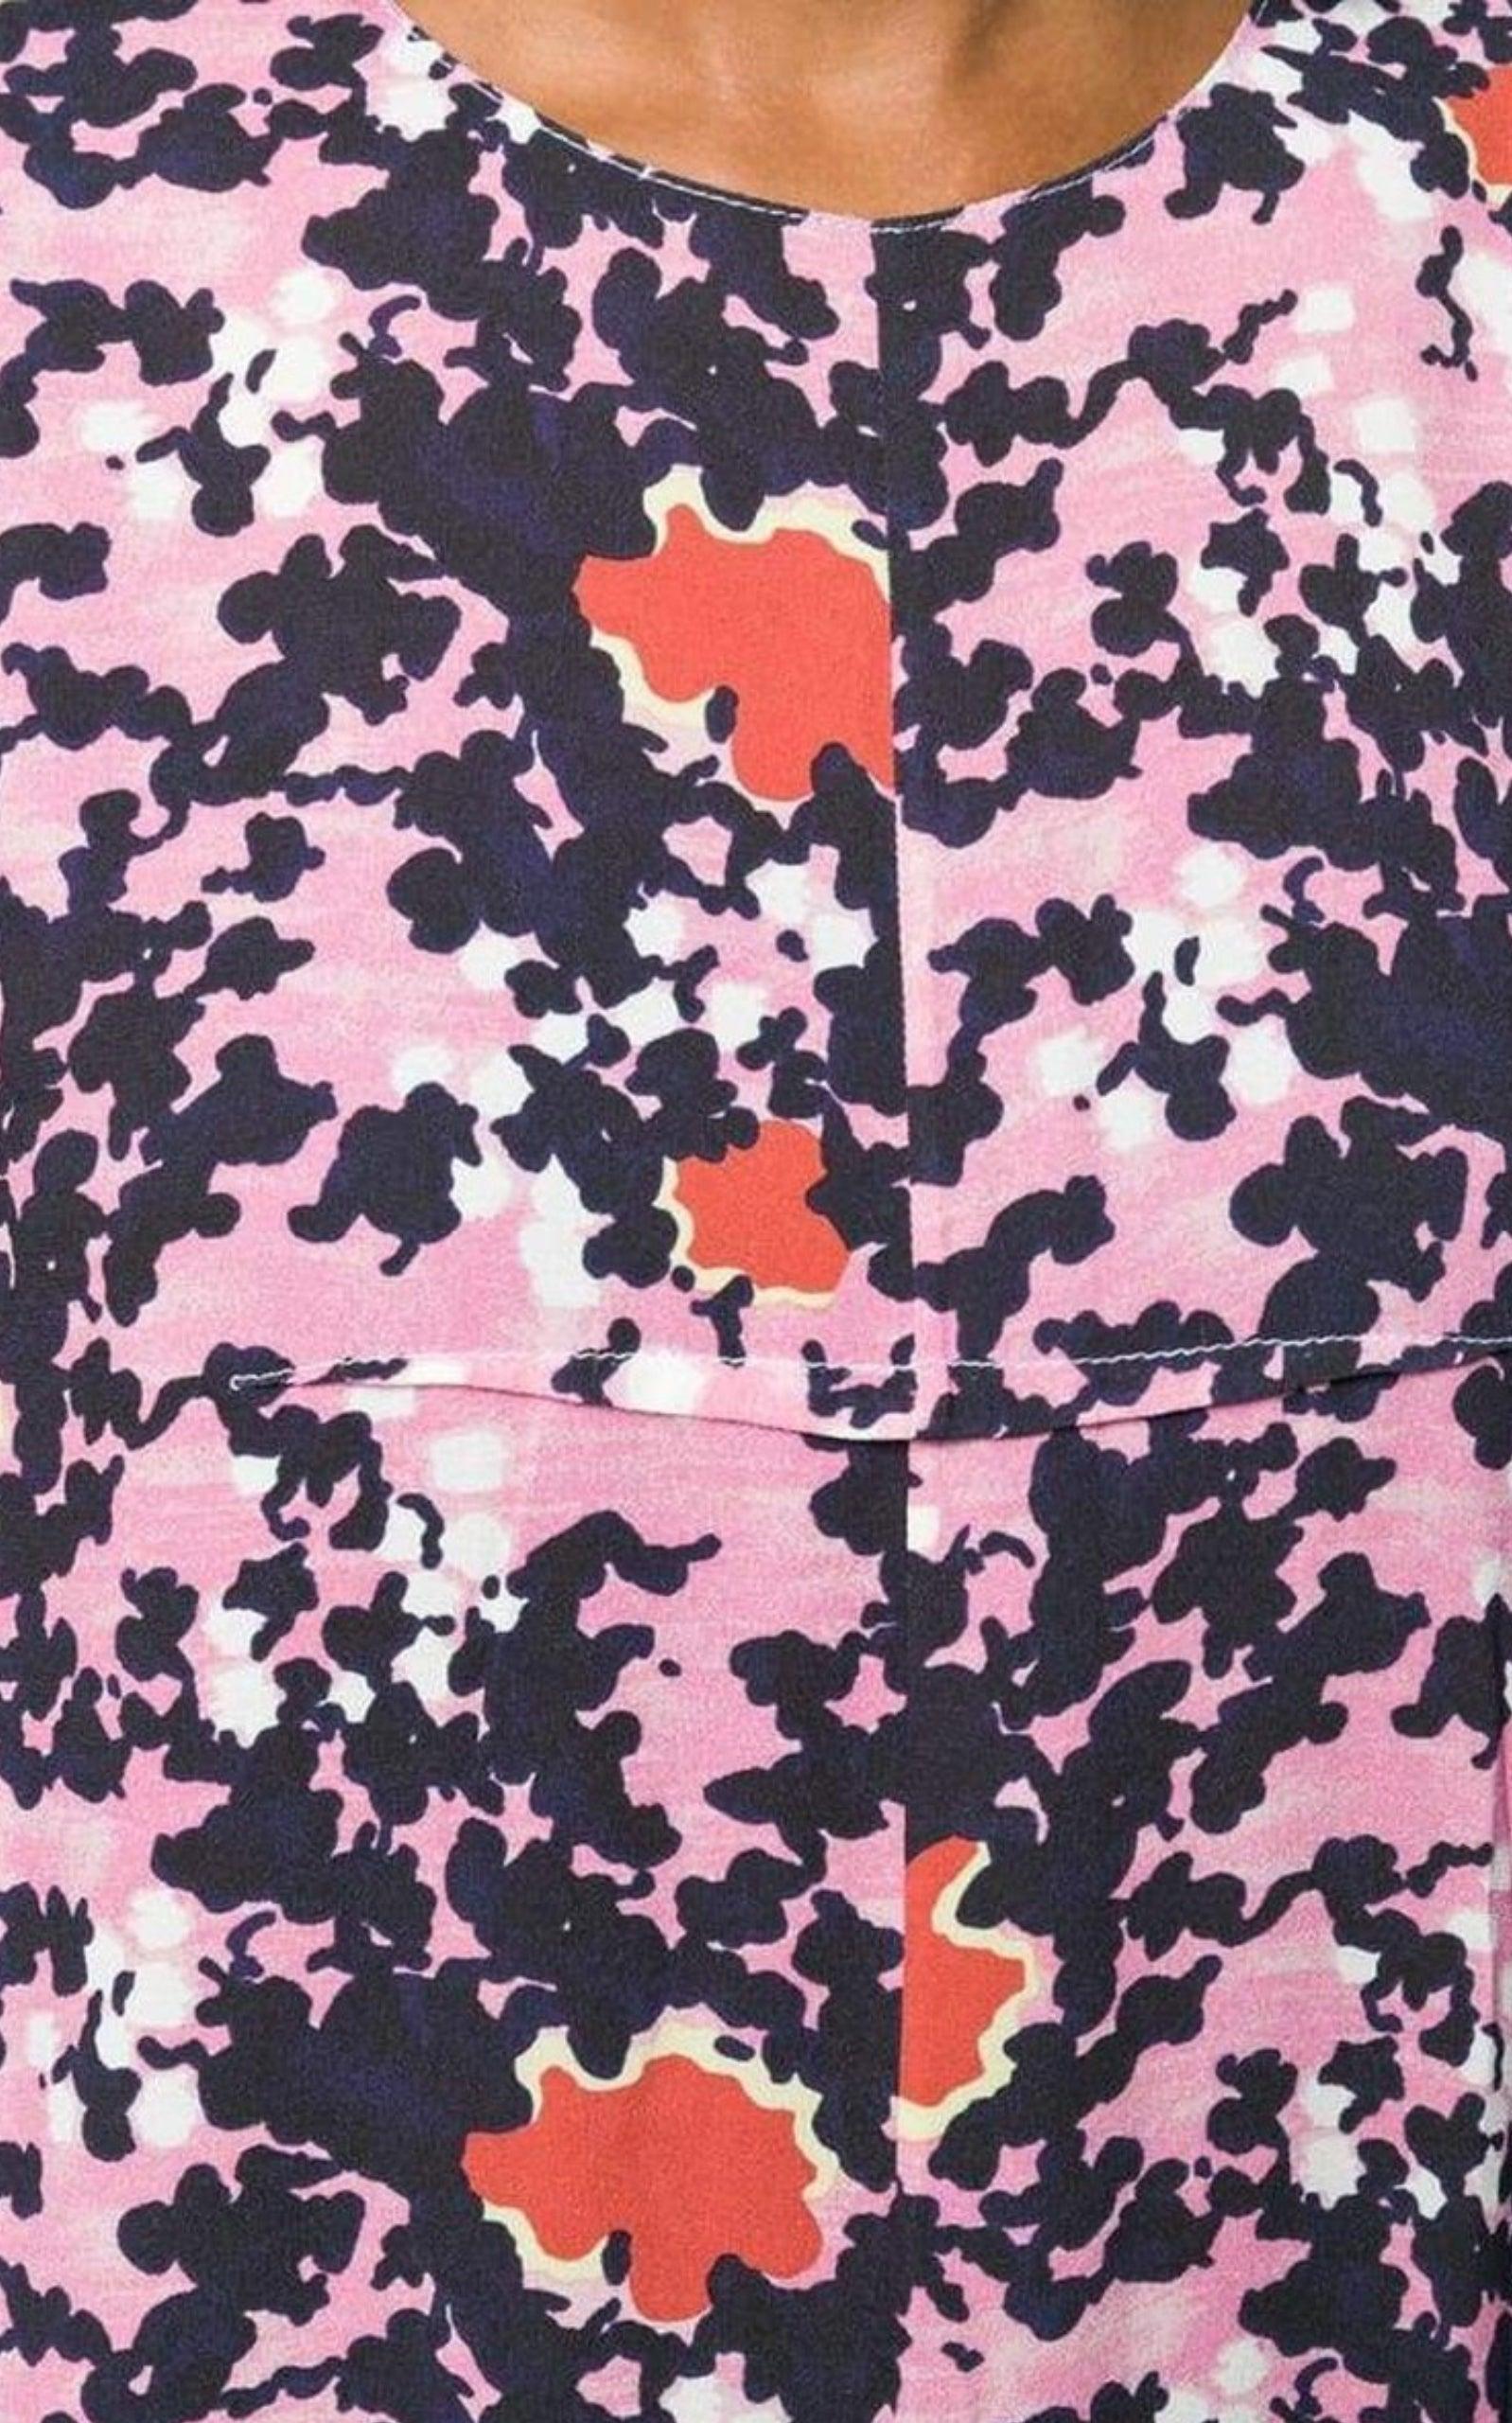  MarniAbstract Camouflage Print Dress - Runway Catalog